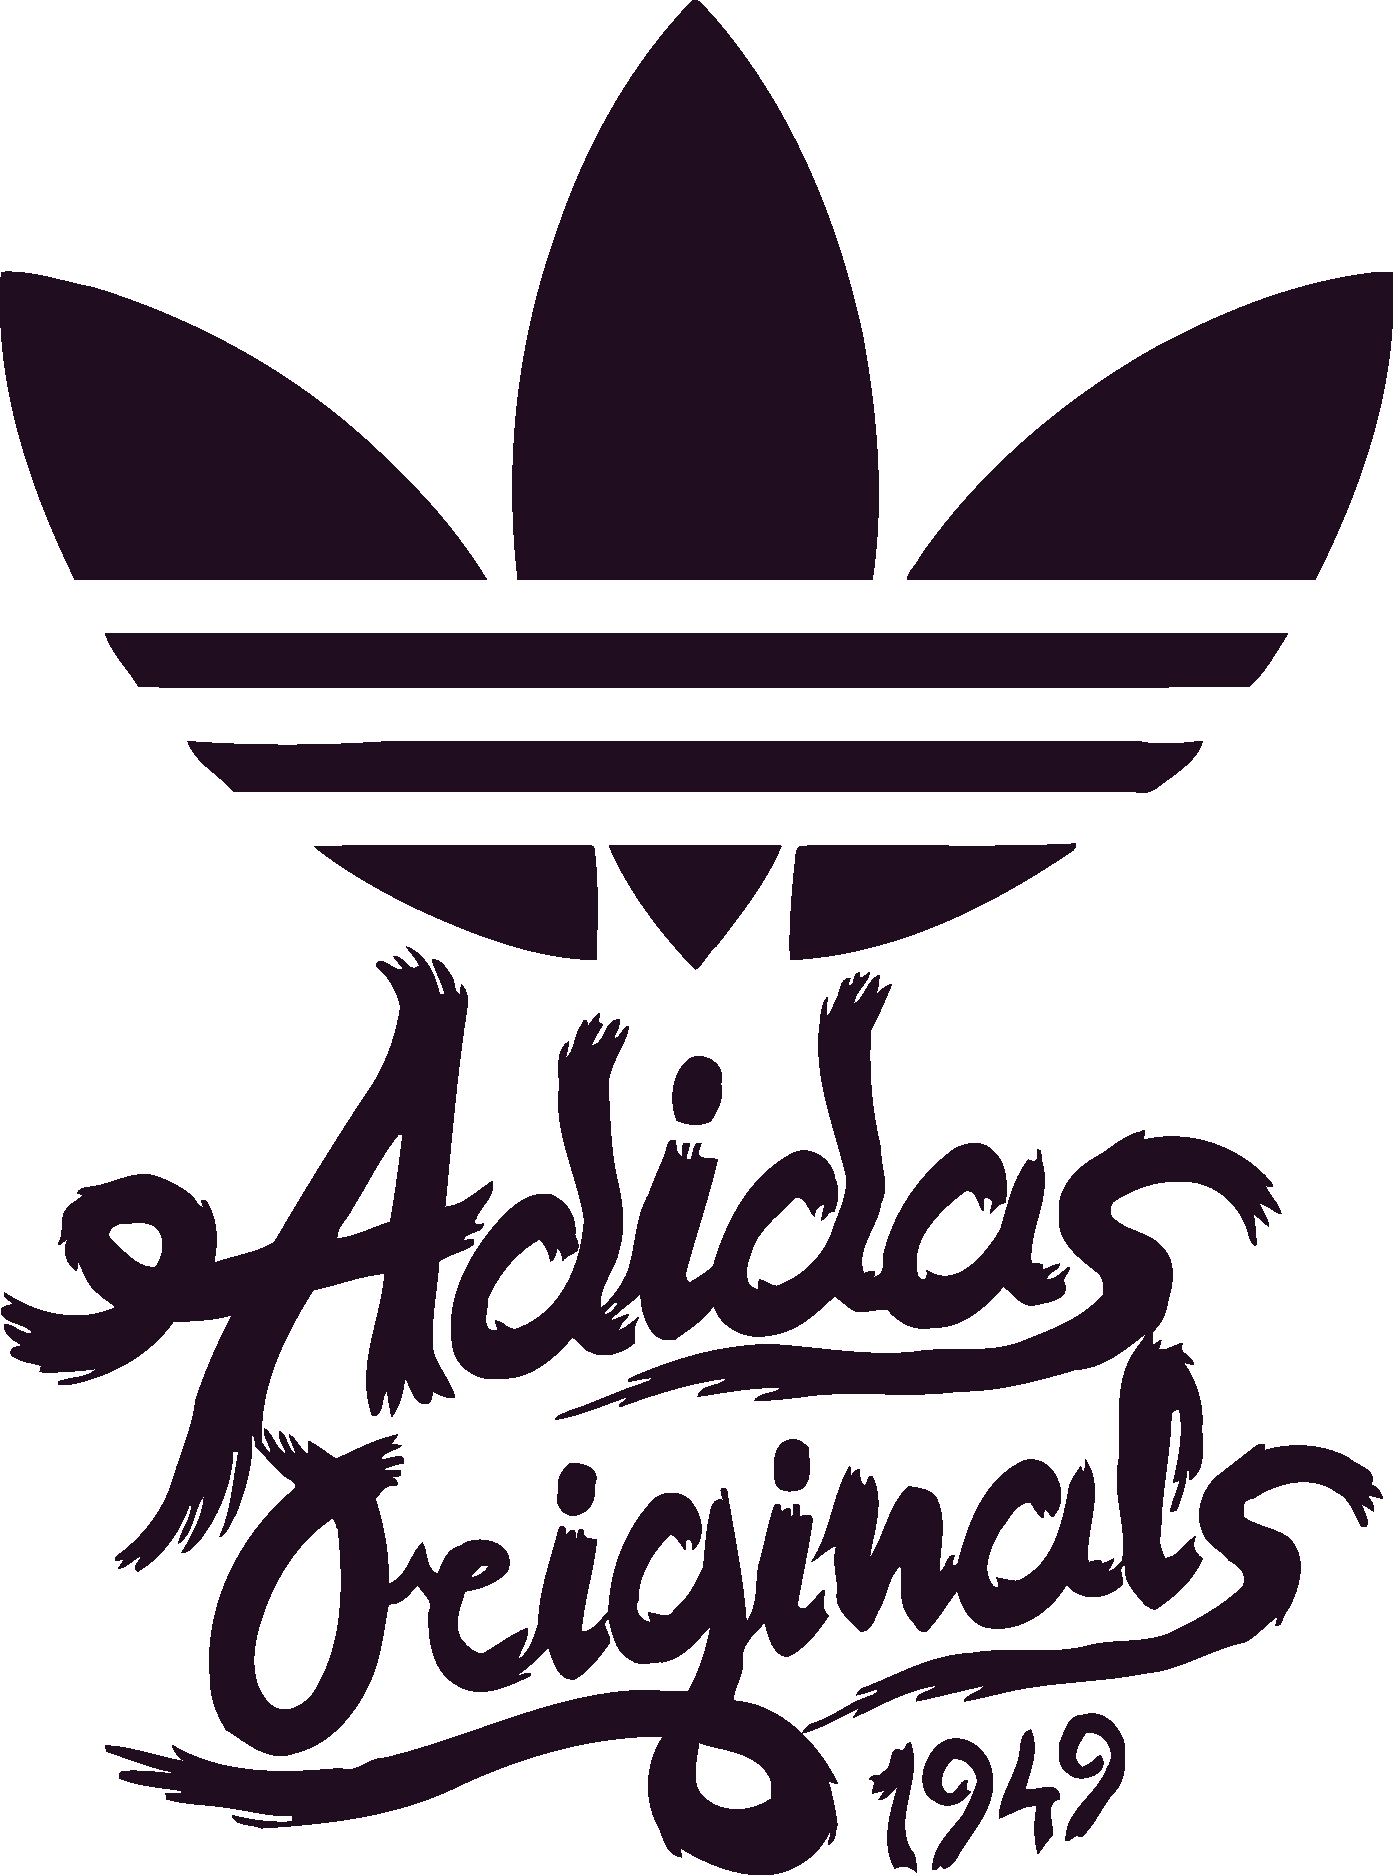 Adidas Originals logo vector download free